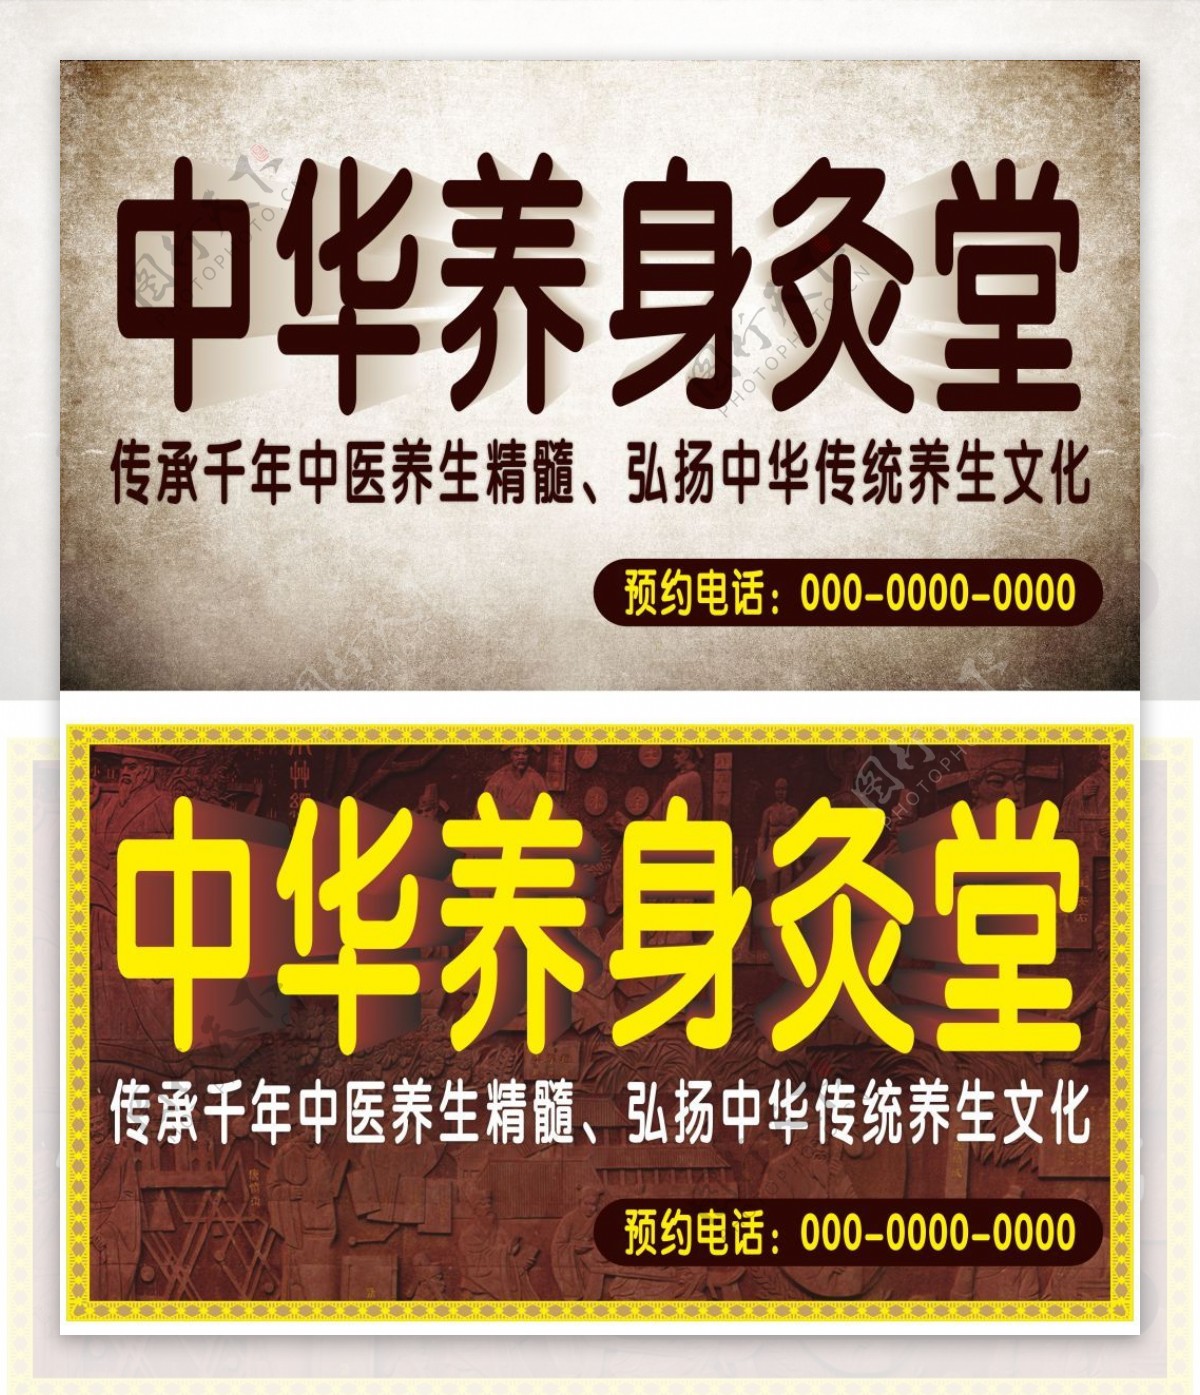 中国风养生堂海报设计